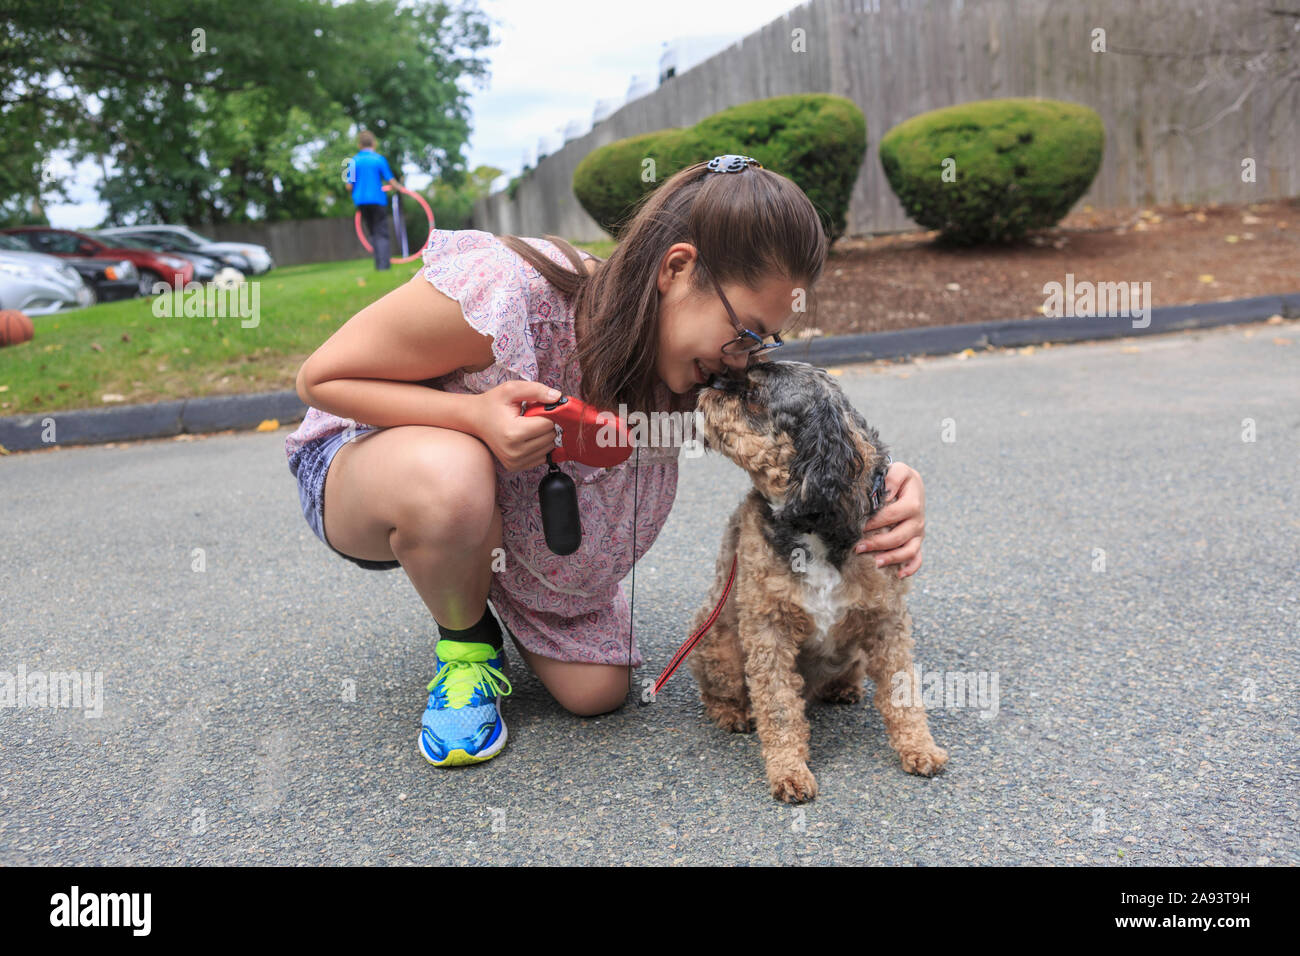 Jeune fille qui a un handicap d'apprentissage jouant avec son chien Banque D'Images